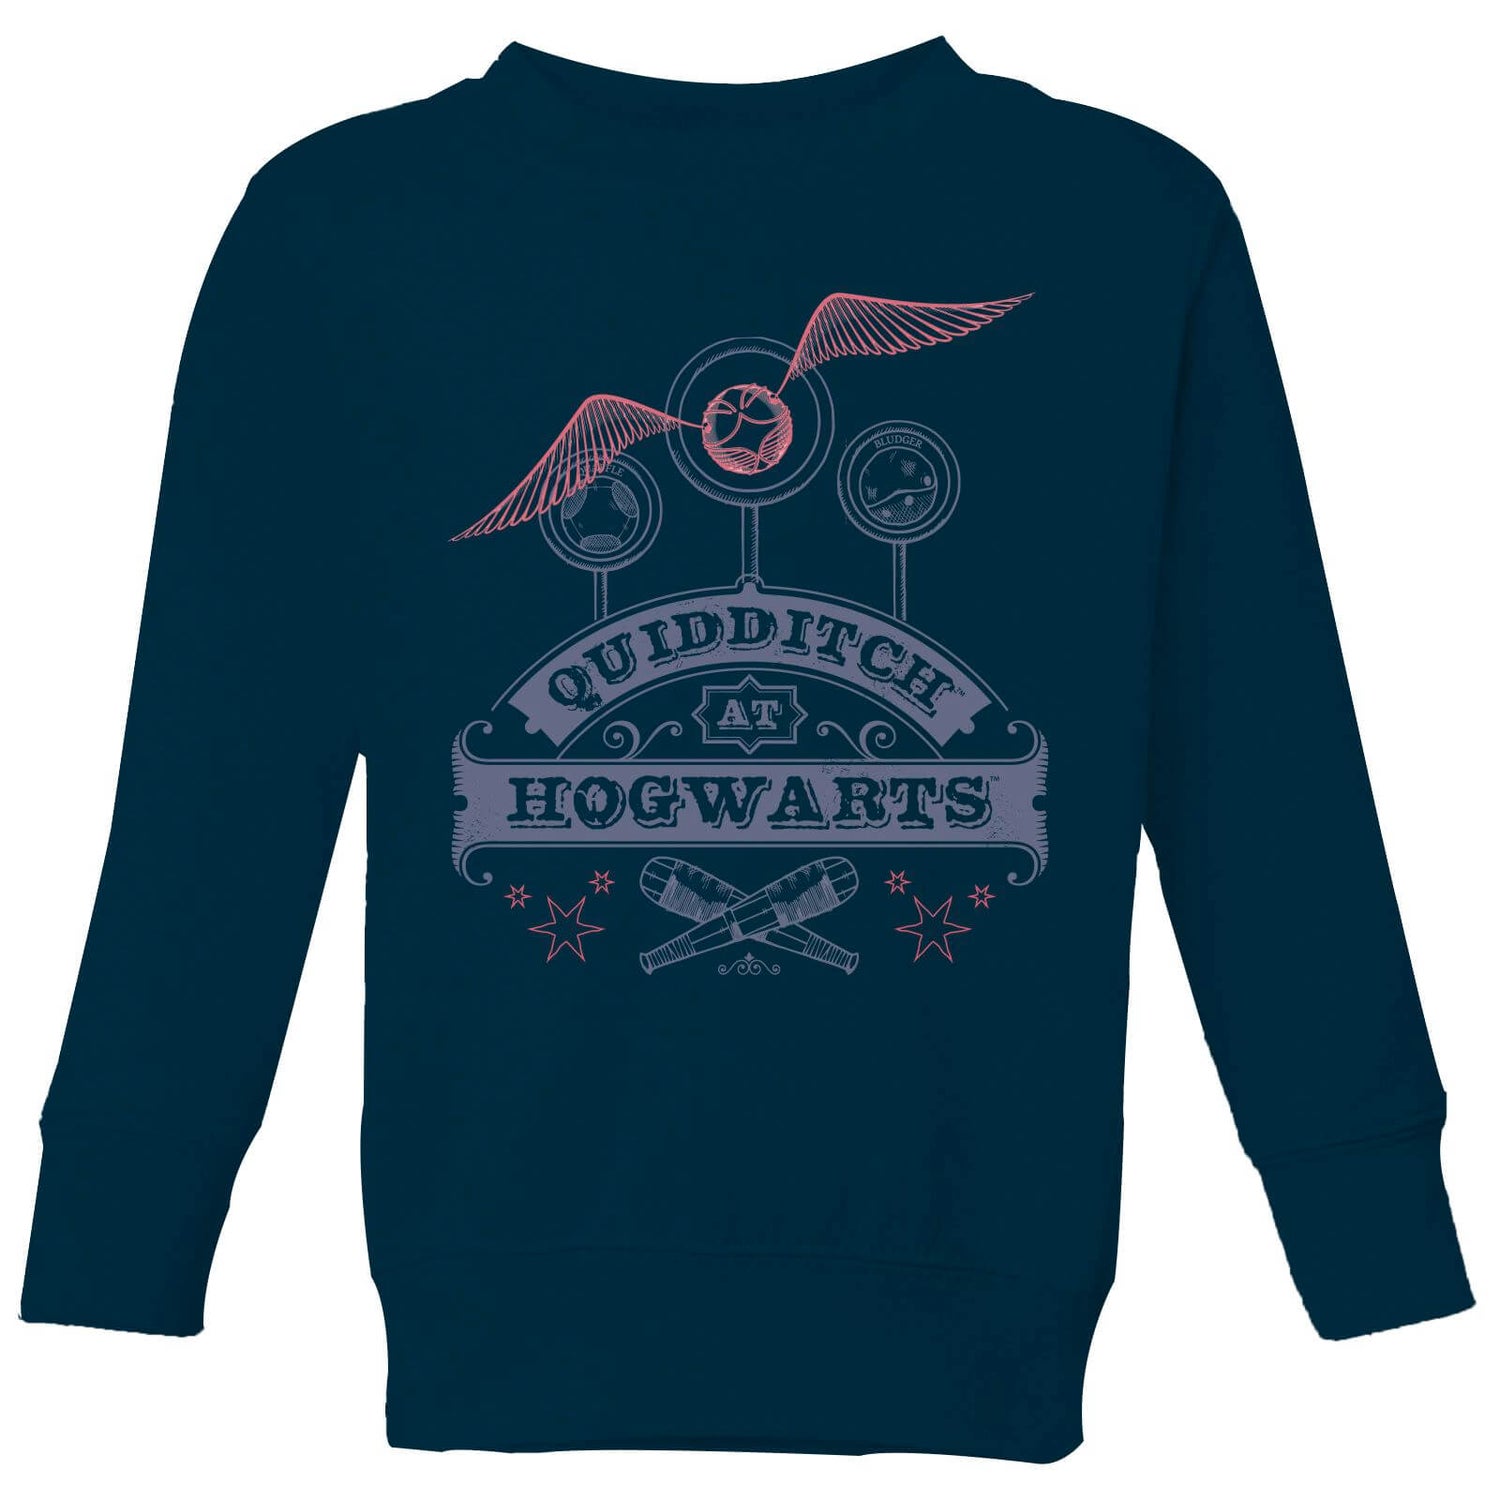 Harry Potter Quidditch At Hogwarts Kids' Sweatshirt - Navy